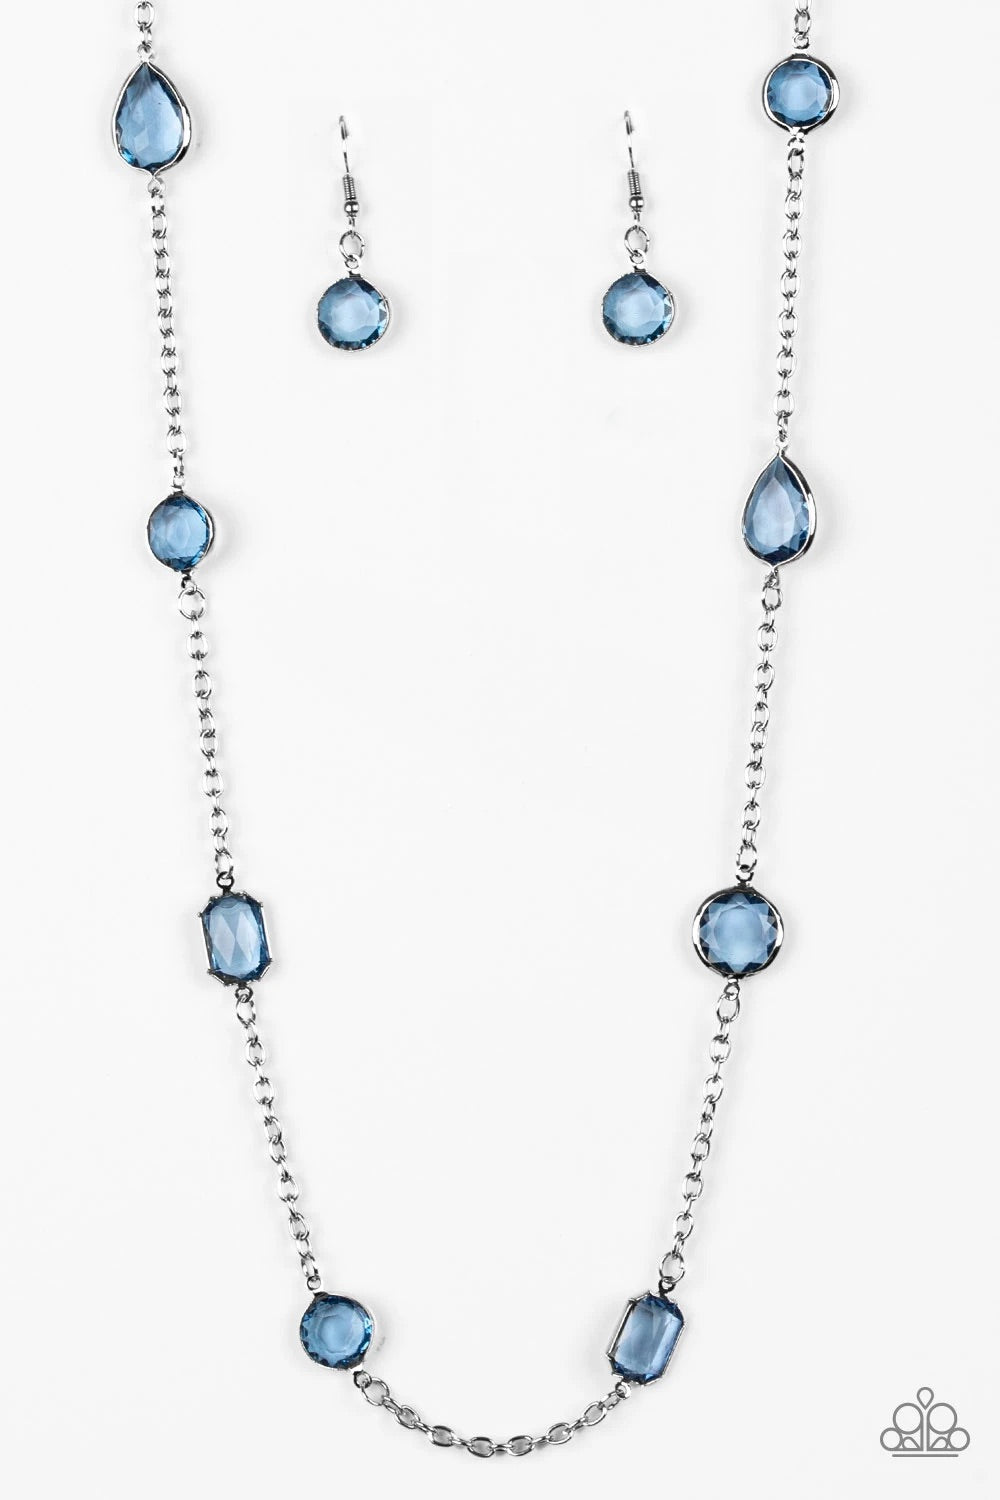 Glassy Glamorous Blue Necklace freeshipping - JewLz4u Gemstone Gallery